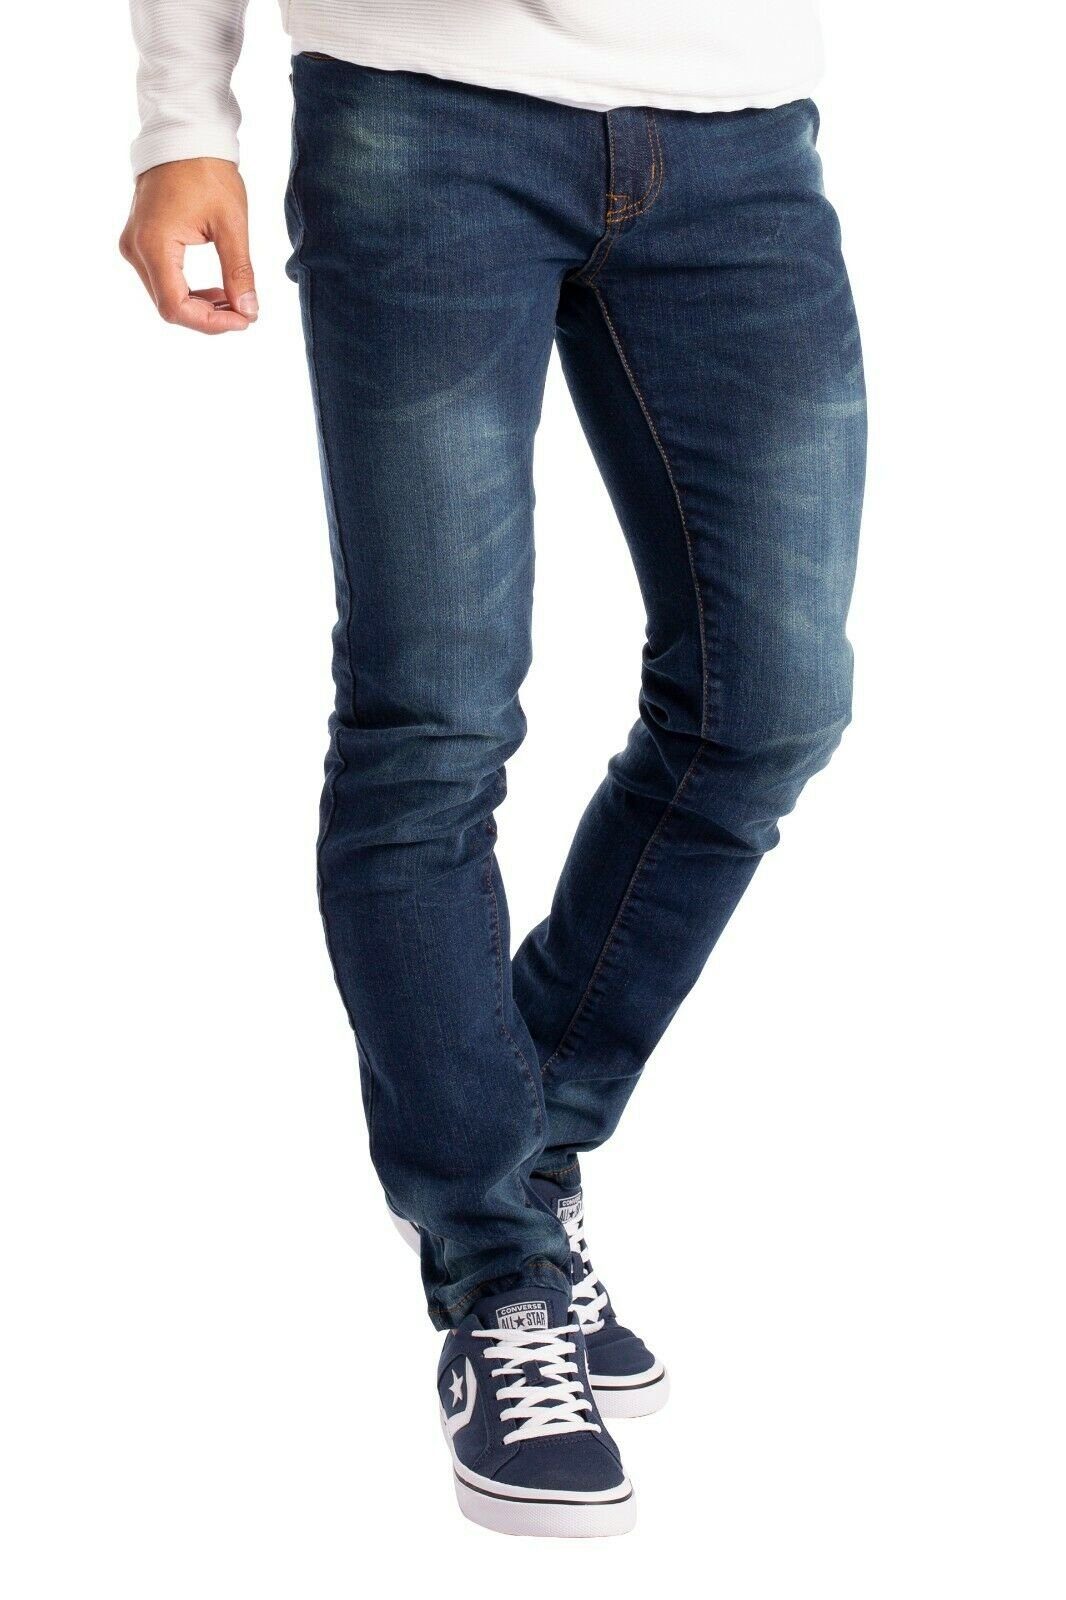 BlauerHafen Slim-fit-Jeans Herren Slim Fit Jeanshose Stretch Designer Hose Super Flex Denim Pants 2 Seitentaschen, 2 Gesäßtaschen und 1 vordere Münztasche Indigo | Stretchjeans